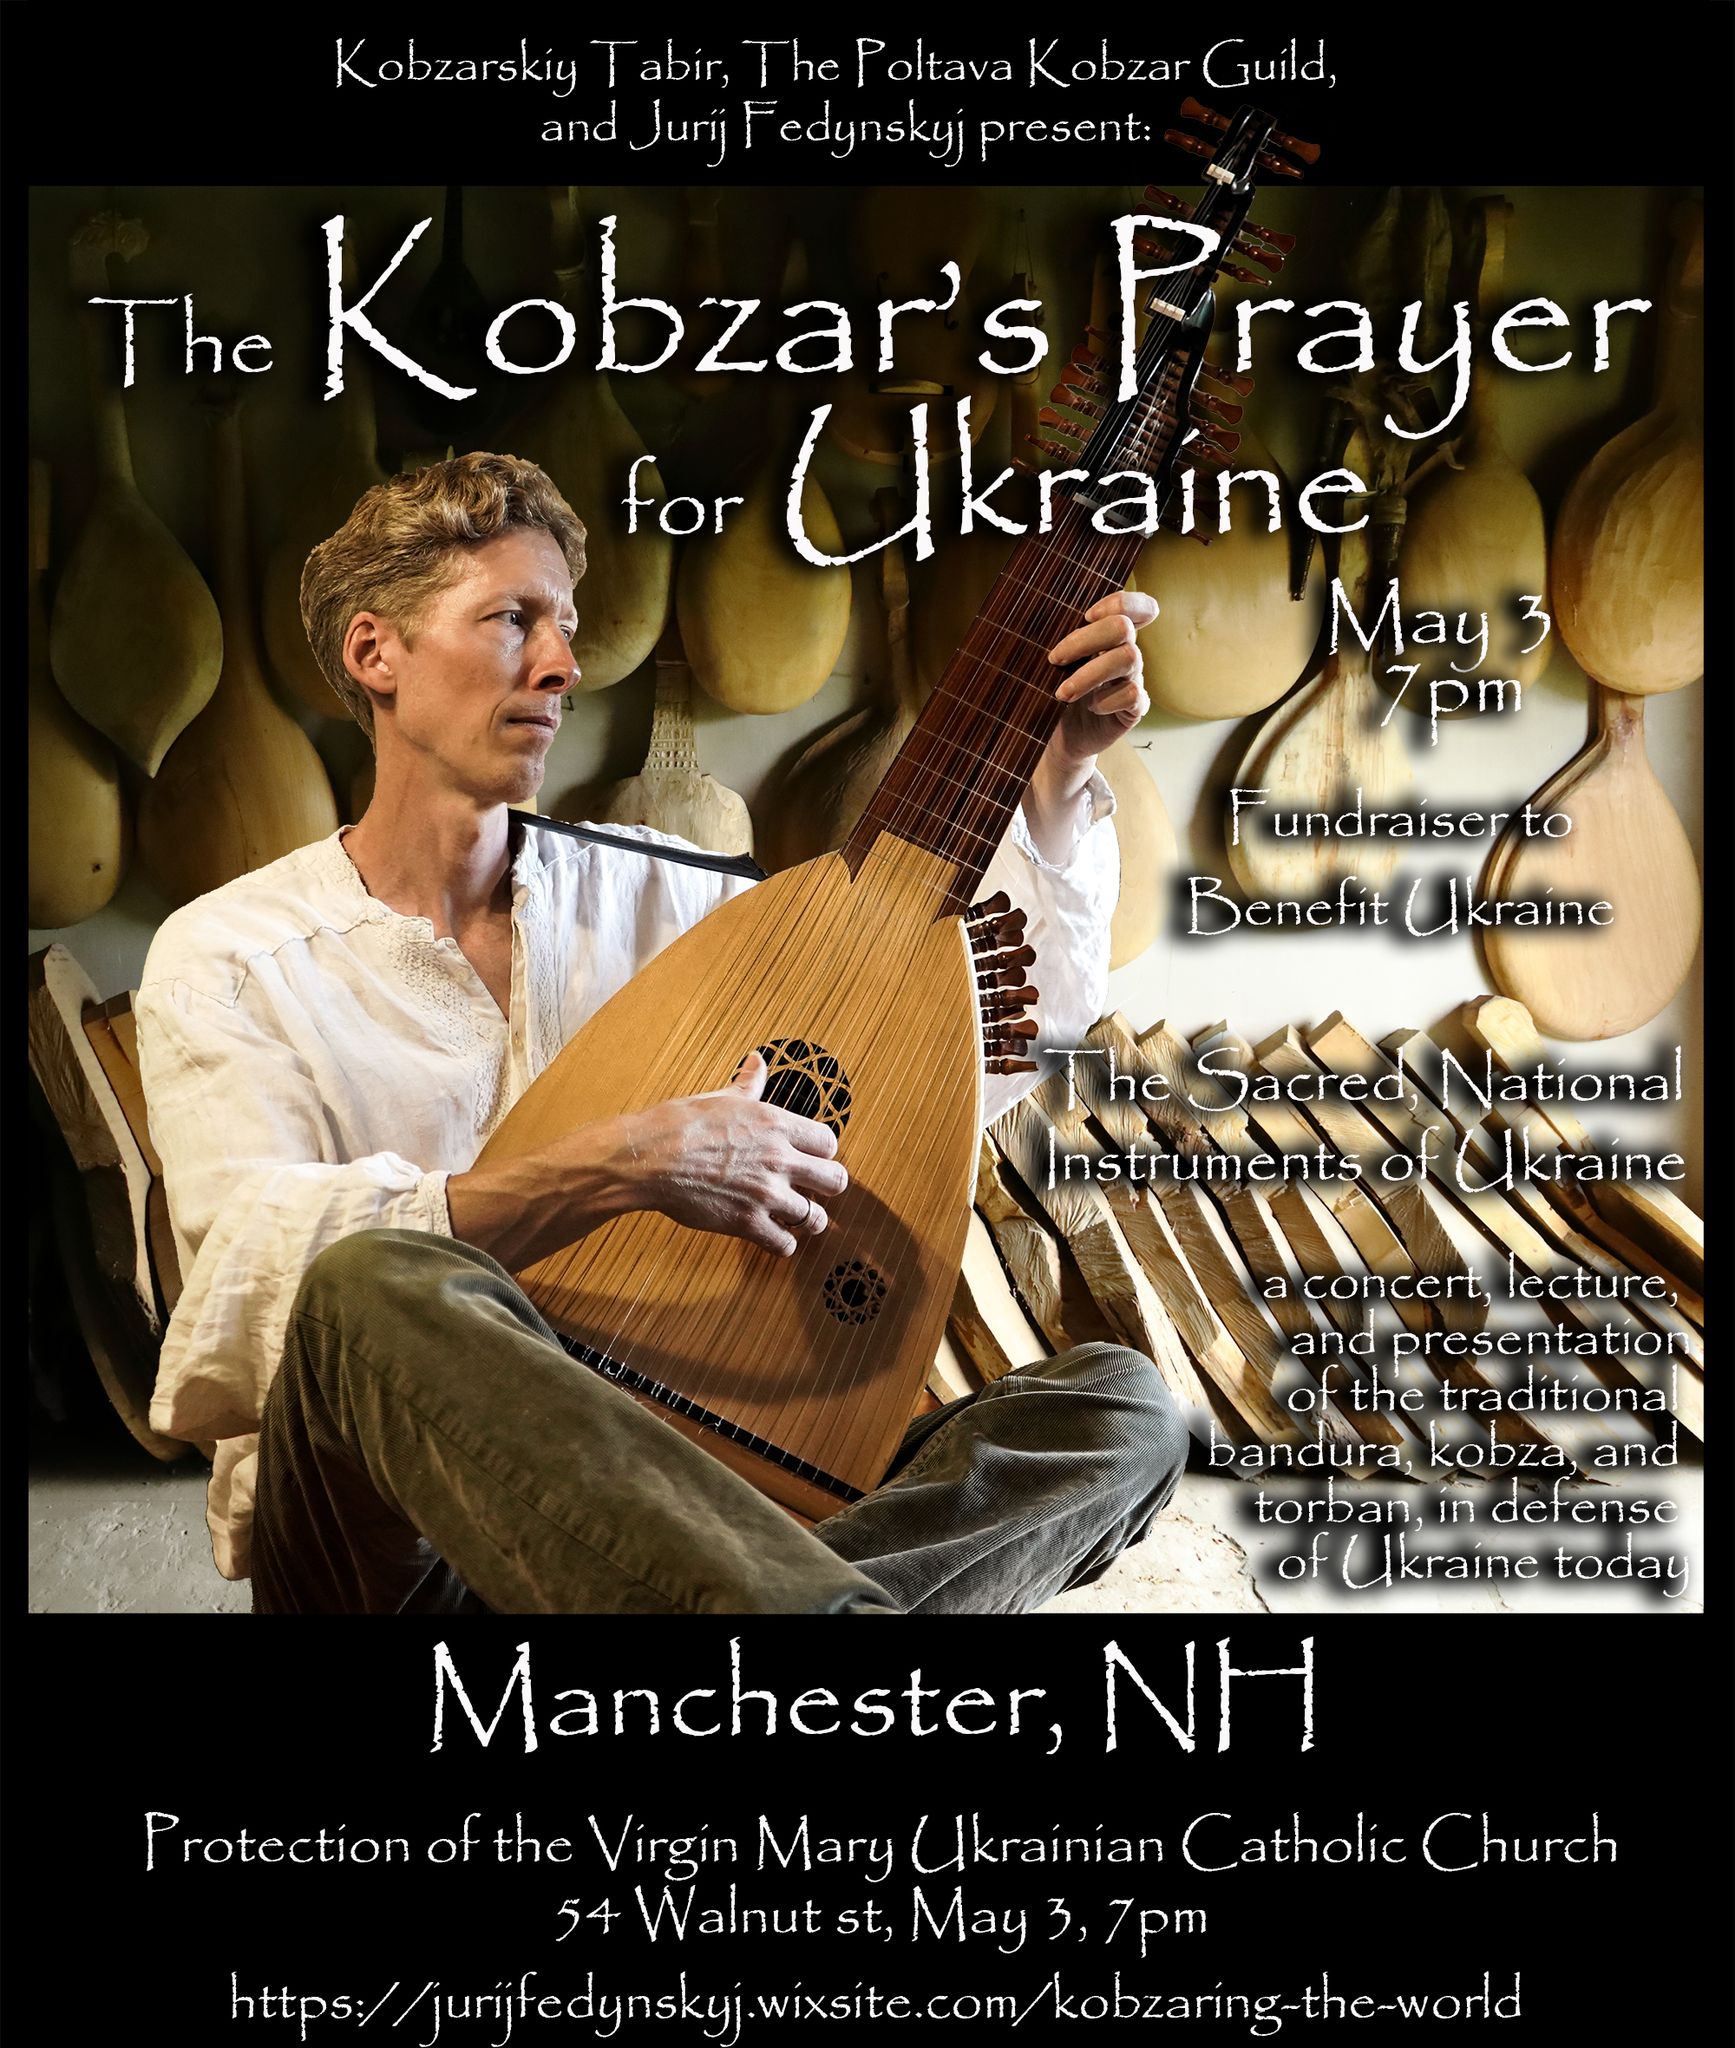 The Kobzar's Prayer for Ukraine